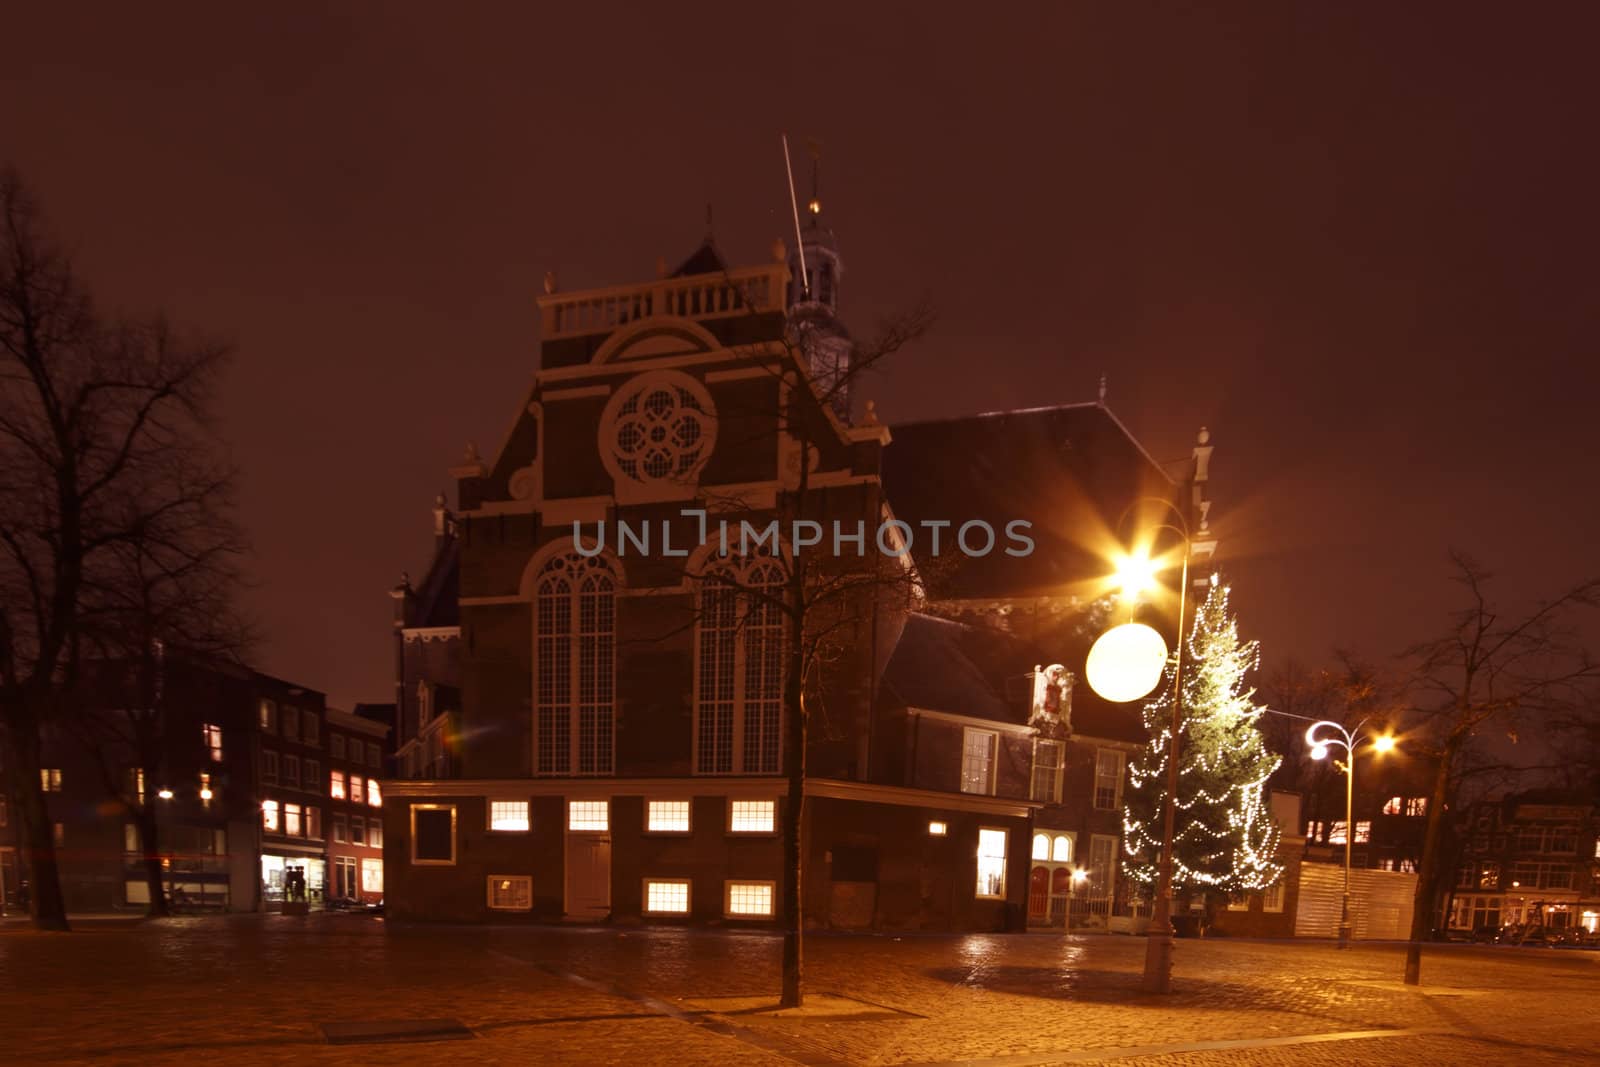 Noorderkerk in Amsterdam the Netherlands by night by devy